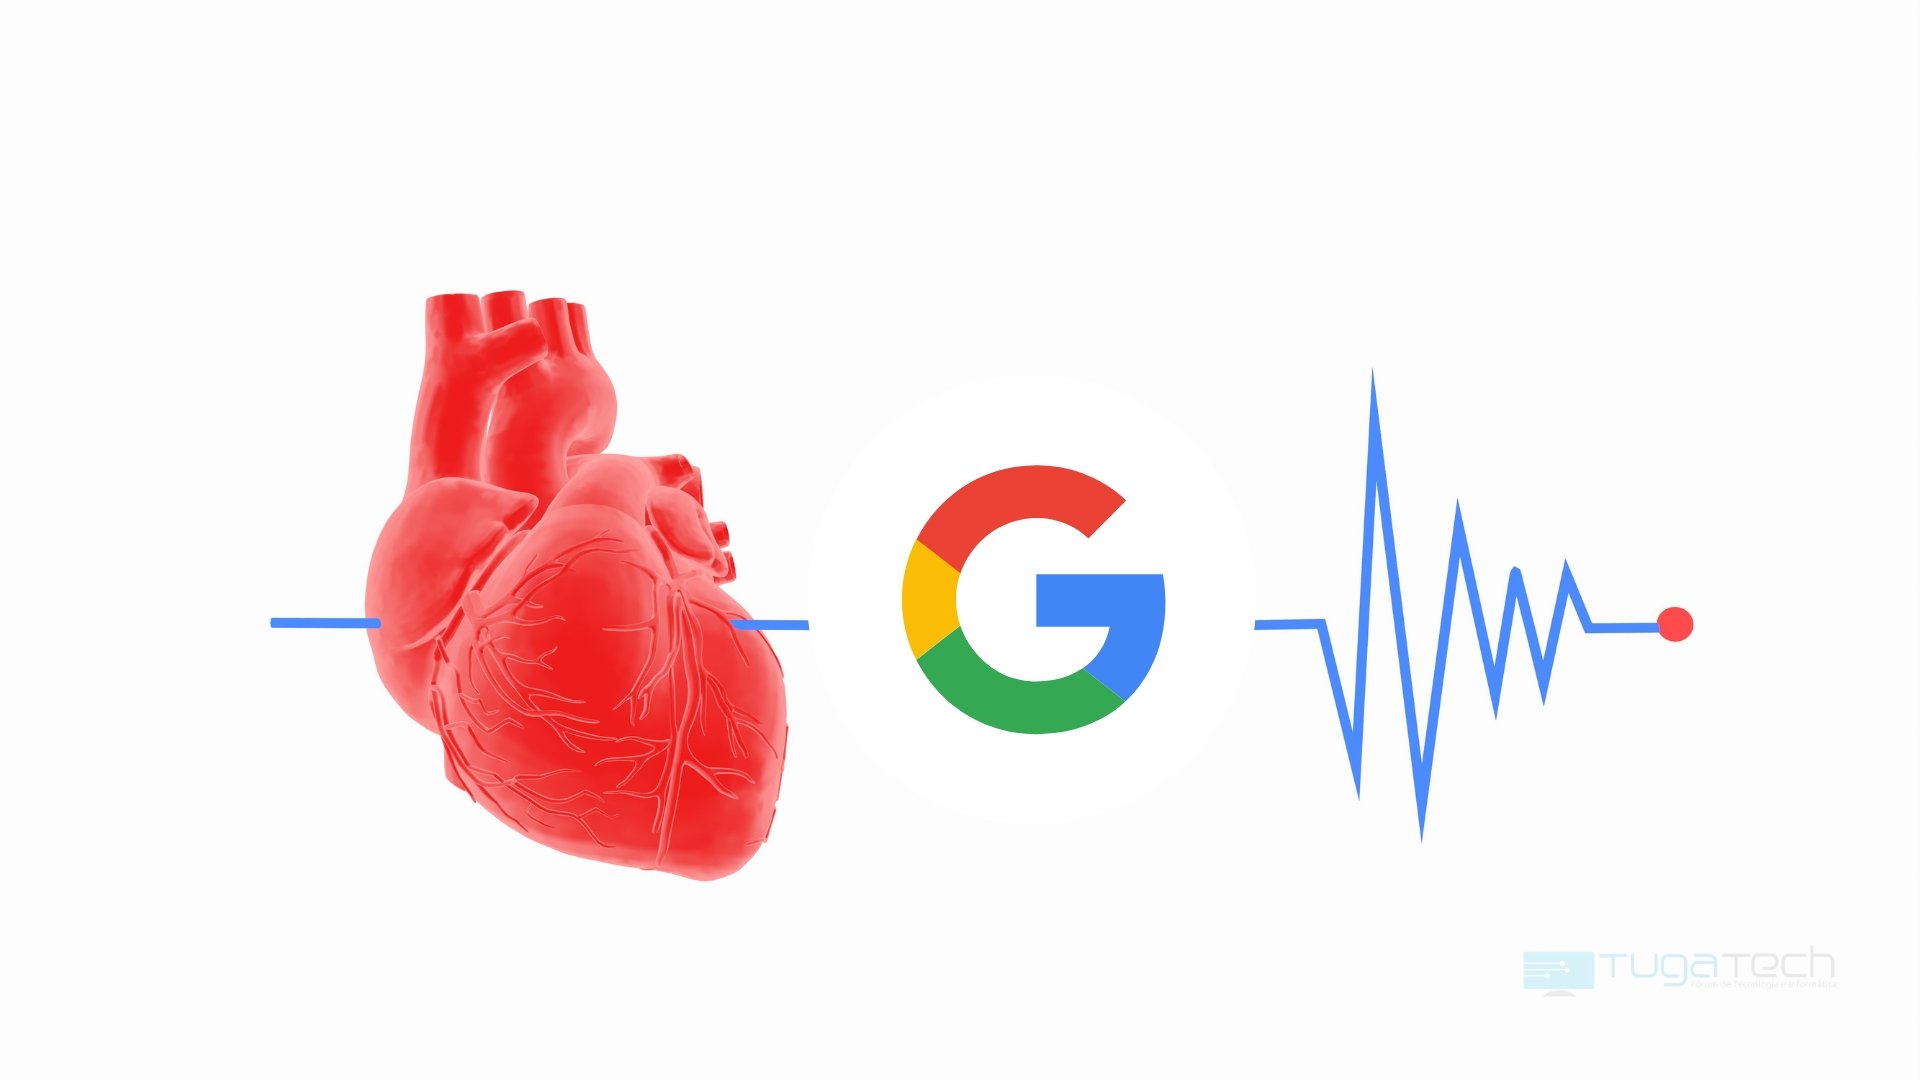 Google problemas no coração